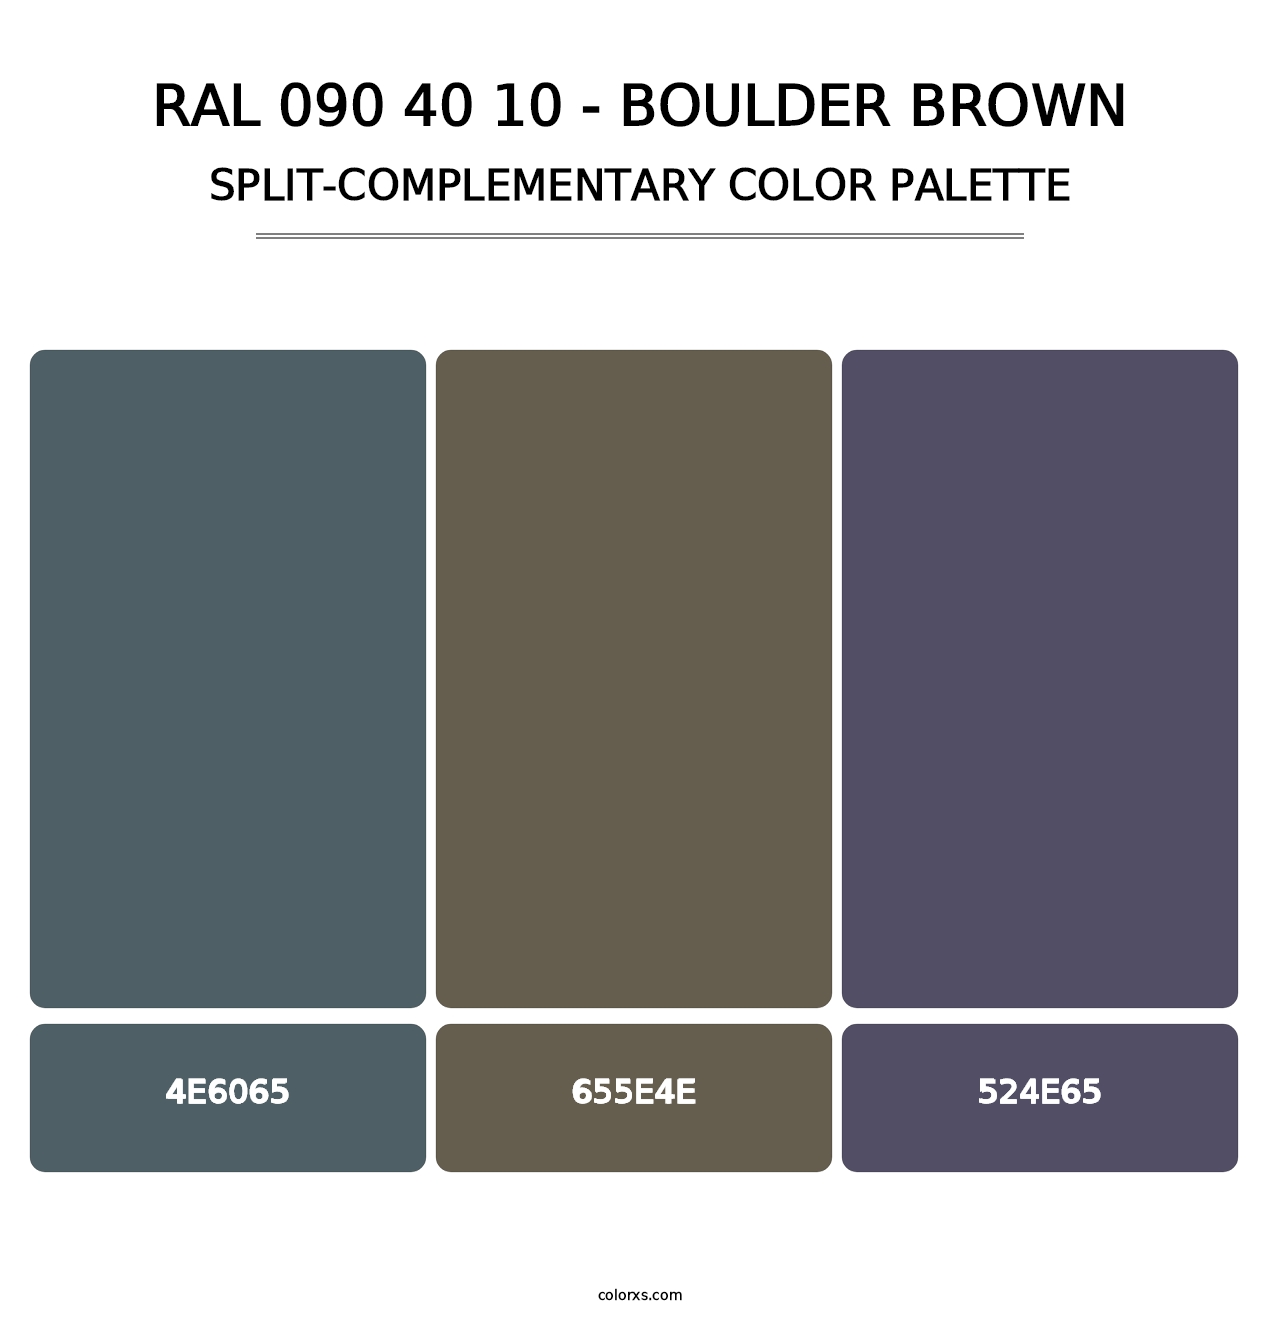 RAL 090 40 10 - Boulder Brown - Split-Complementary Color Palette